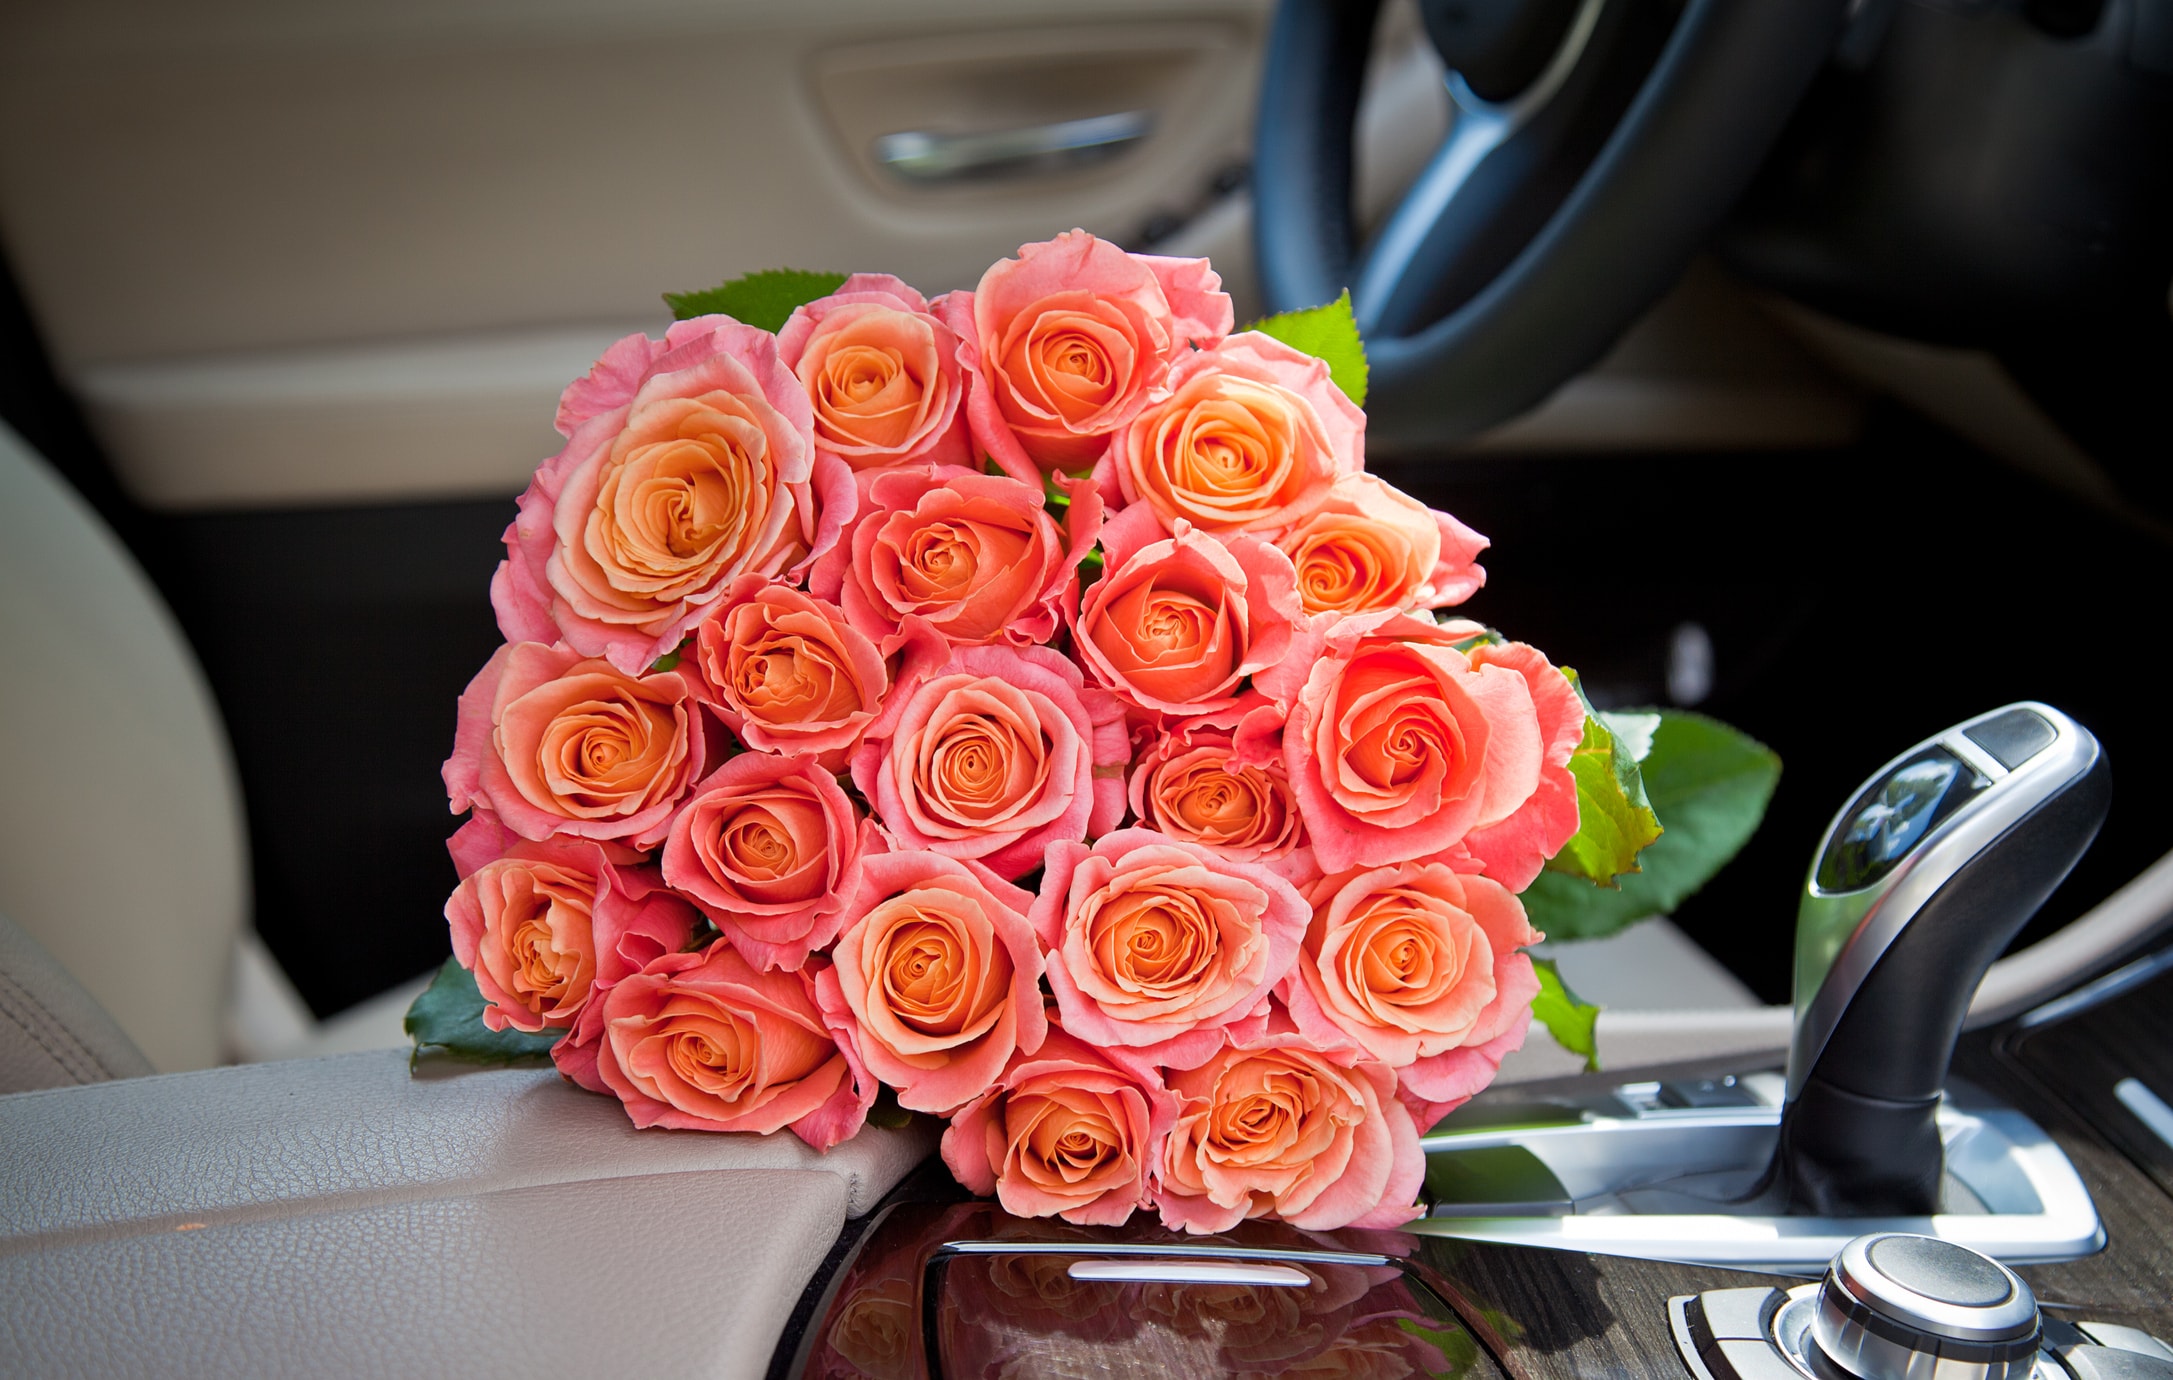 Ziedu veikaliņš šodien piedāvā iespēju nofotogrāfēties ar milzīgu rožu pušķi, lai jūs varētu pakaitināt savas draudzenes